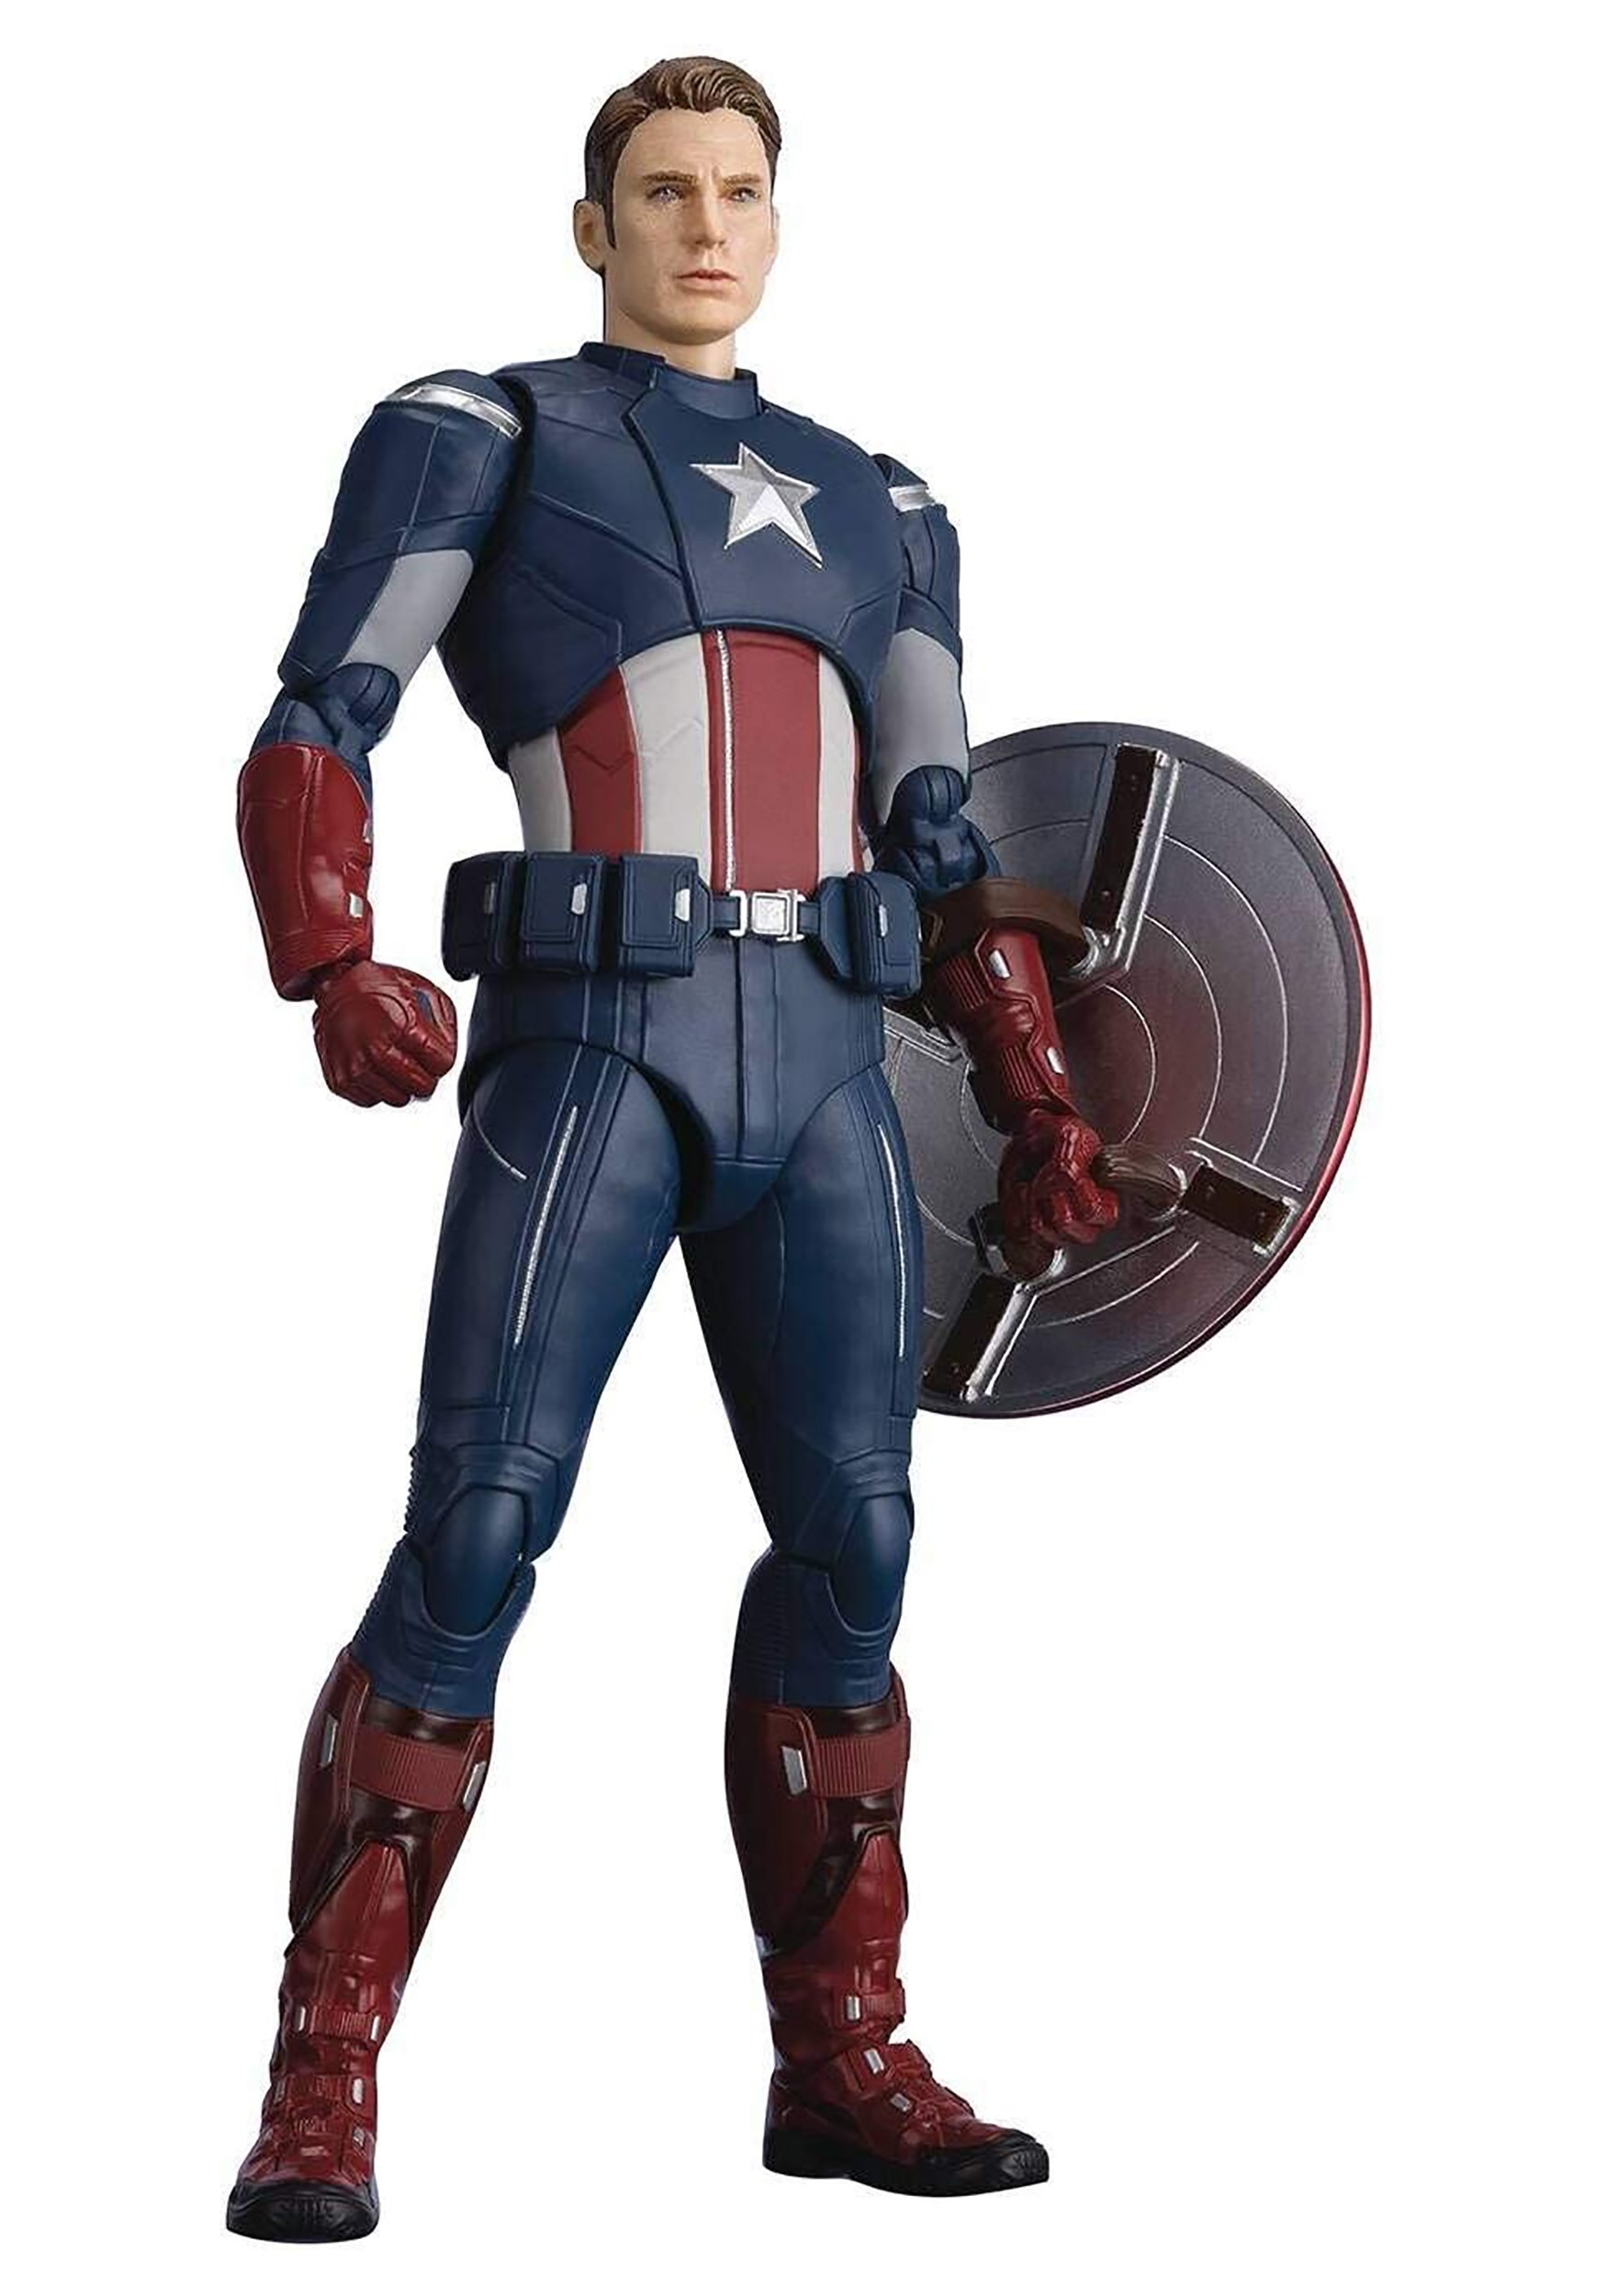 Avengers: Endgame | Captain America Cap vs Cap SH Figuarts Action Figure